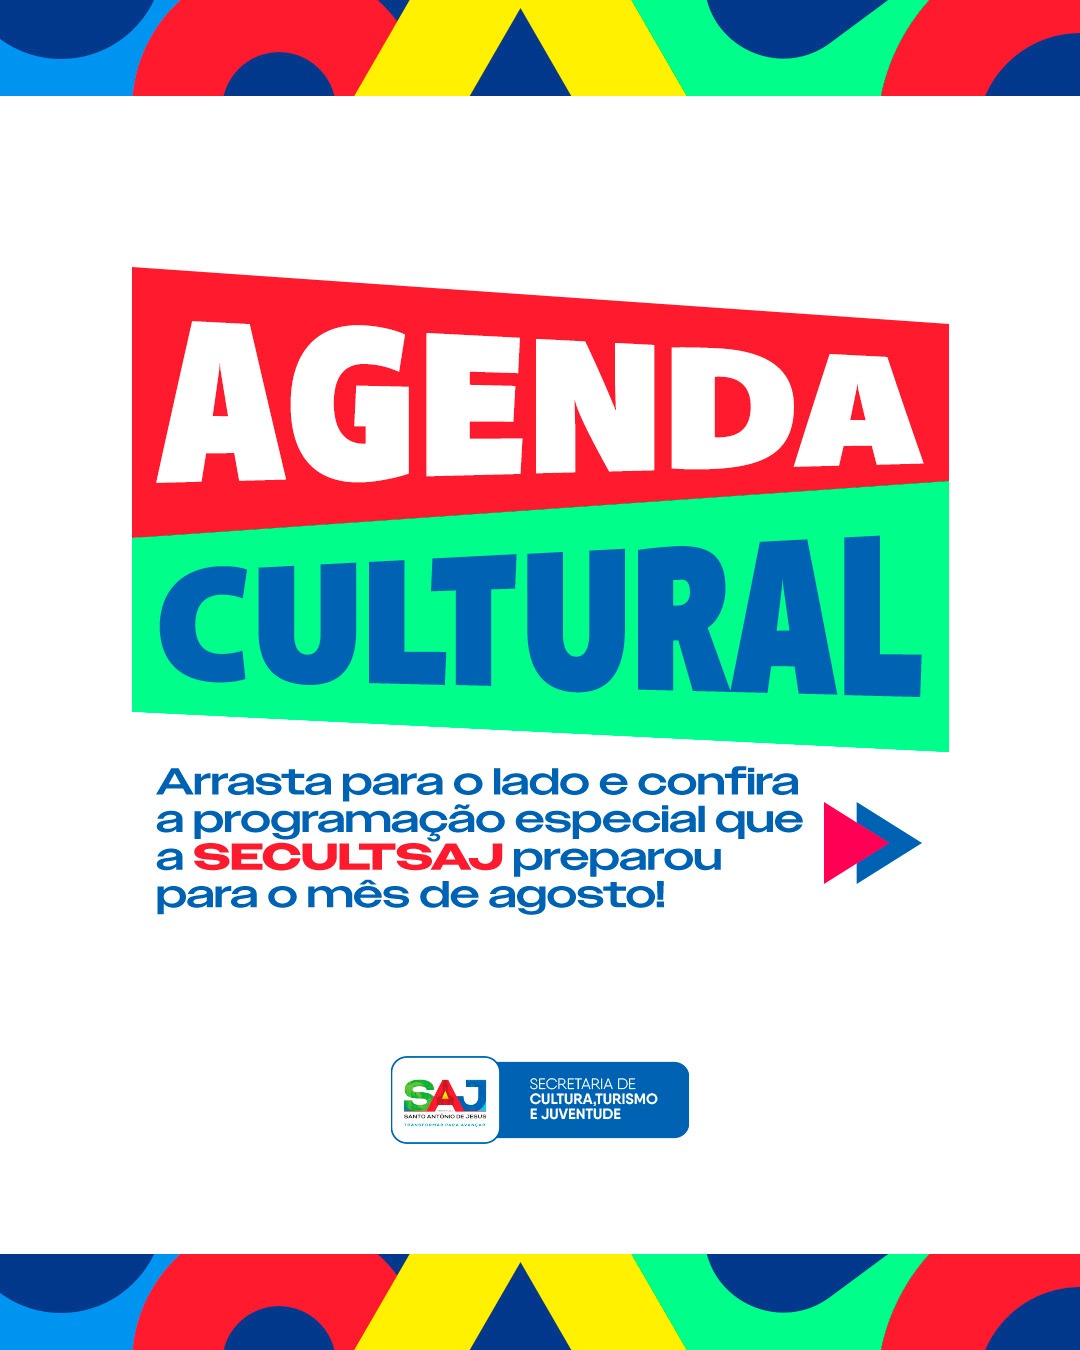 SAJ: Prefeitura, através da Secretaria de Cultura (SCTJ), divulgou Agenda Cultural da cidade